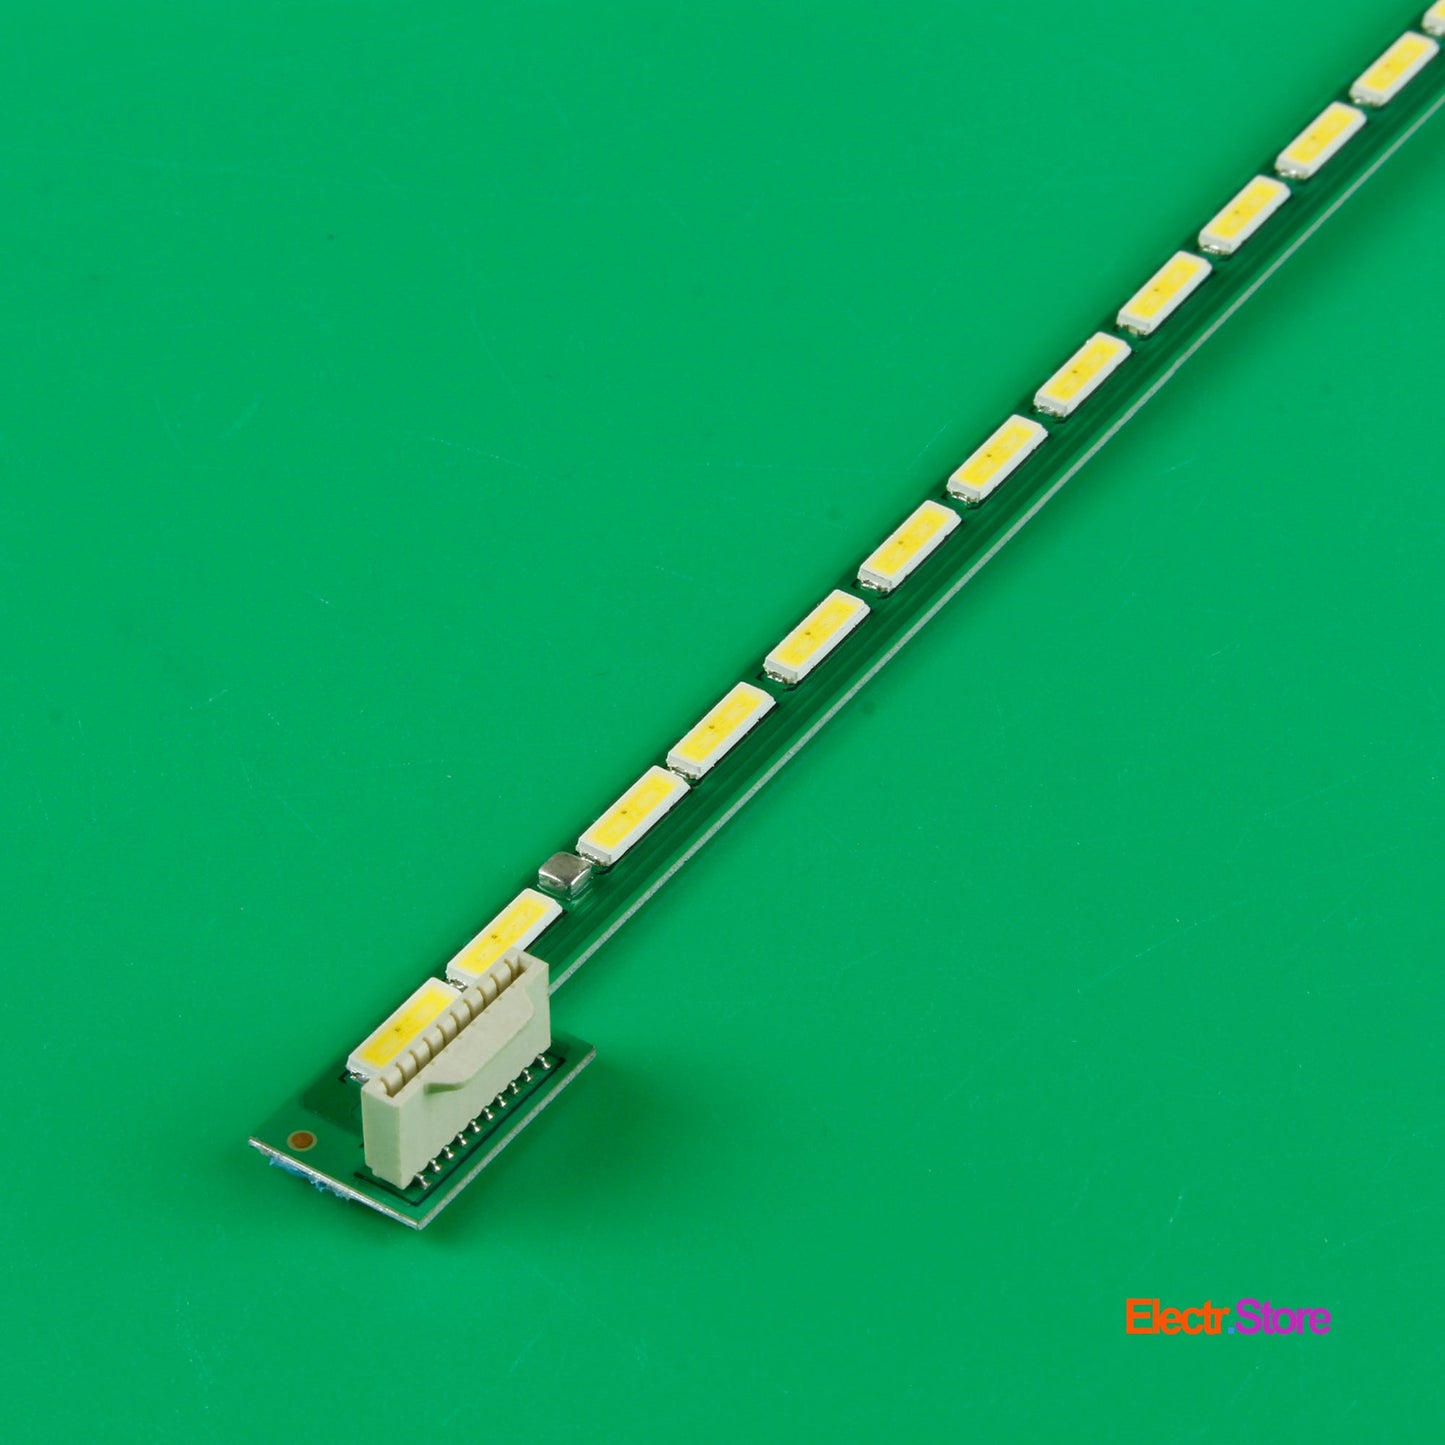 LED Backlight Strip Kits, 42" ART TV Rev0.6 1_L/R-Type, 6916L-0952A, 2X54LED (2 pcs/kit), for TV 42" PHILIPS: 42PFL6188K/12, 42PFL6678, 42PFL7008, 42PFL6198 42" 42" ART 6916L0952A 6920L-0001C LED Backlights LG PHILIPS Electr.Store